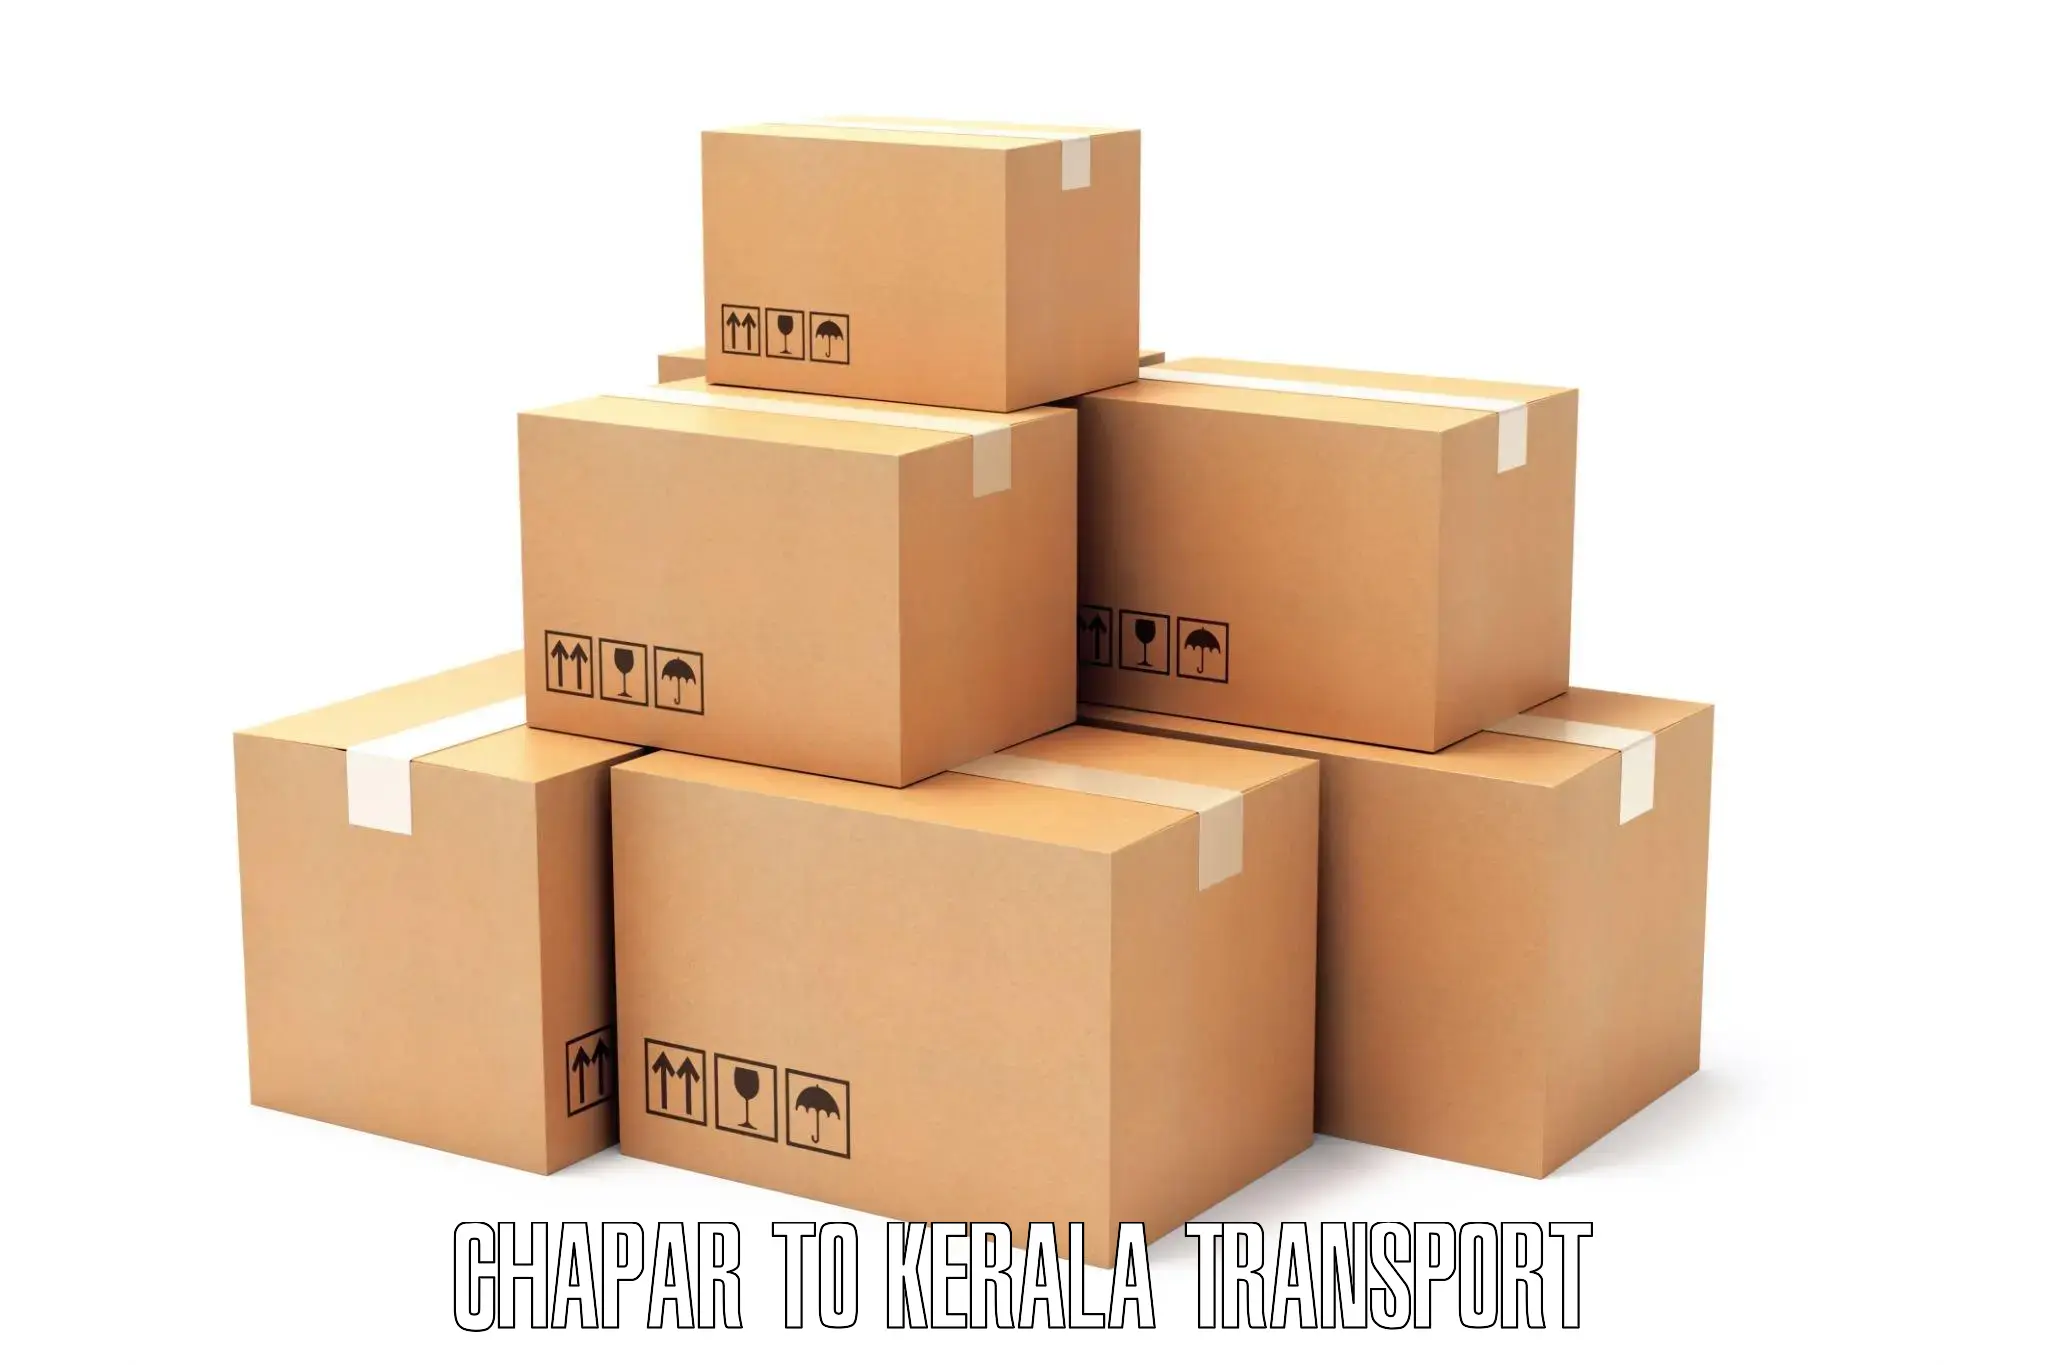 India truck logistics services Chapar to Kochi